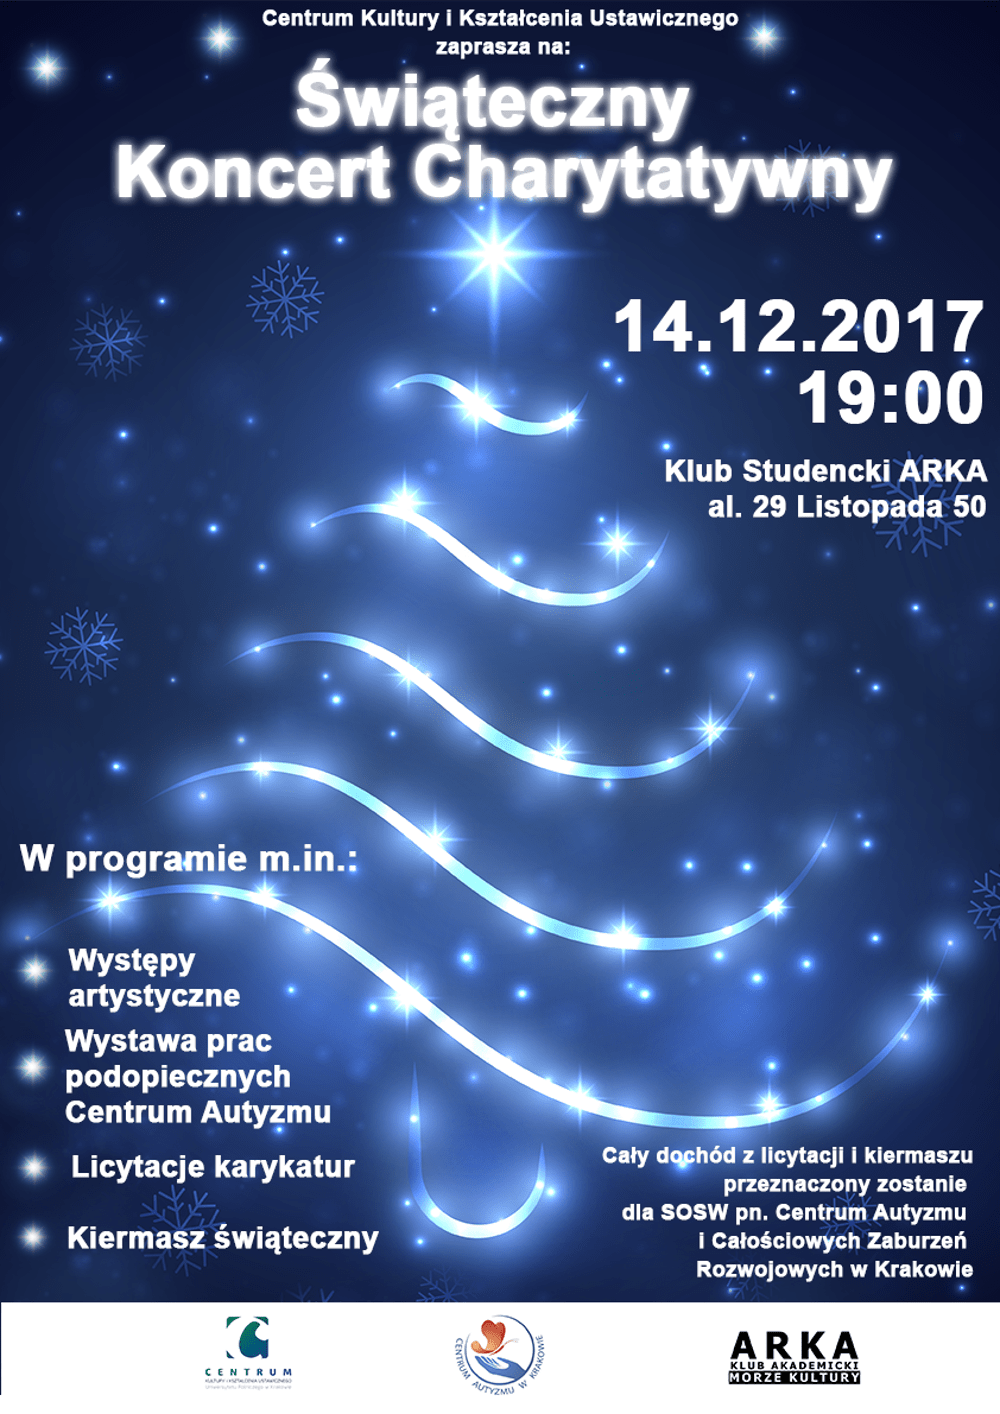 Koncert odbędzie się 14 grudnia 2017 roku o godz. 19:00.